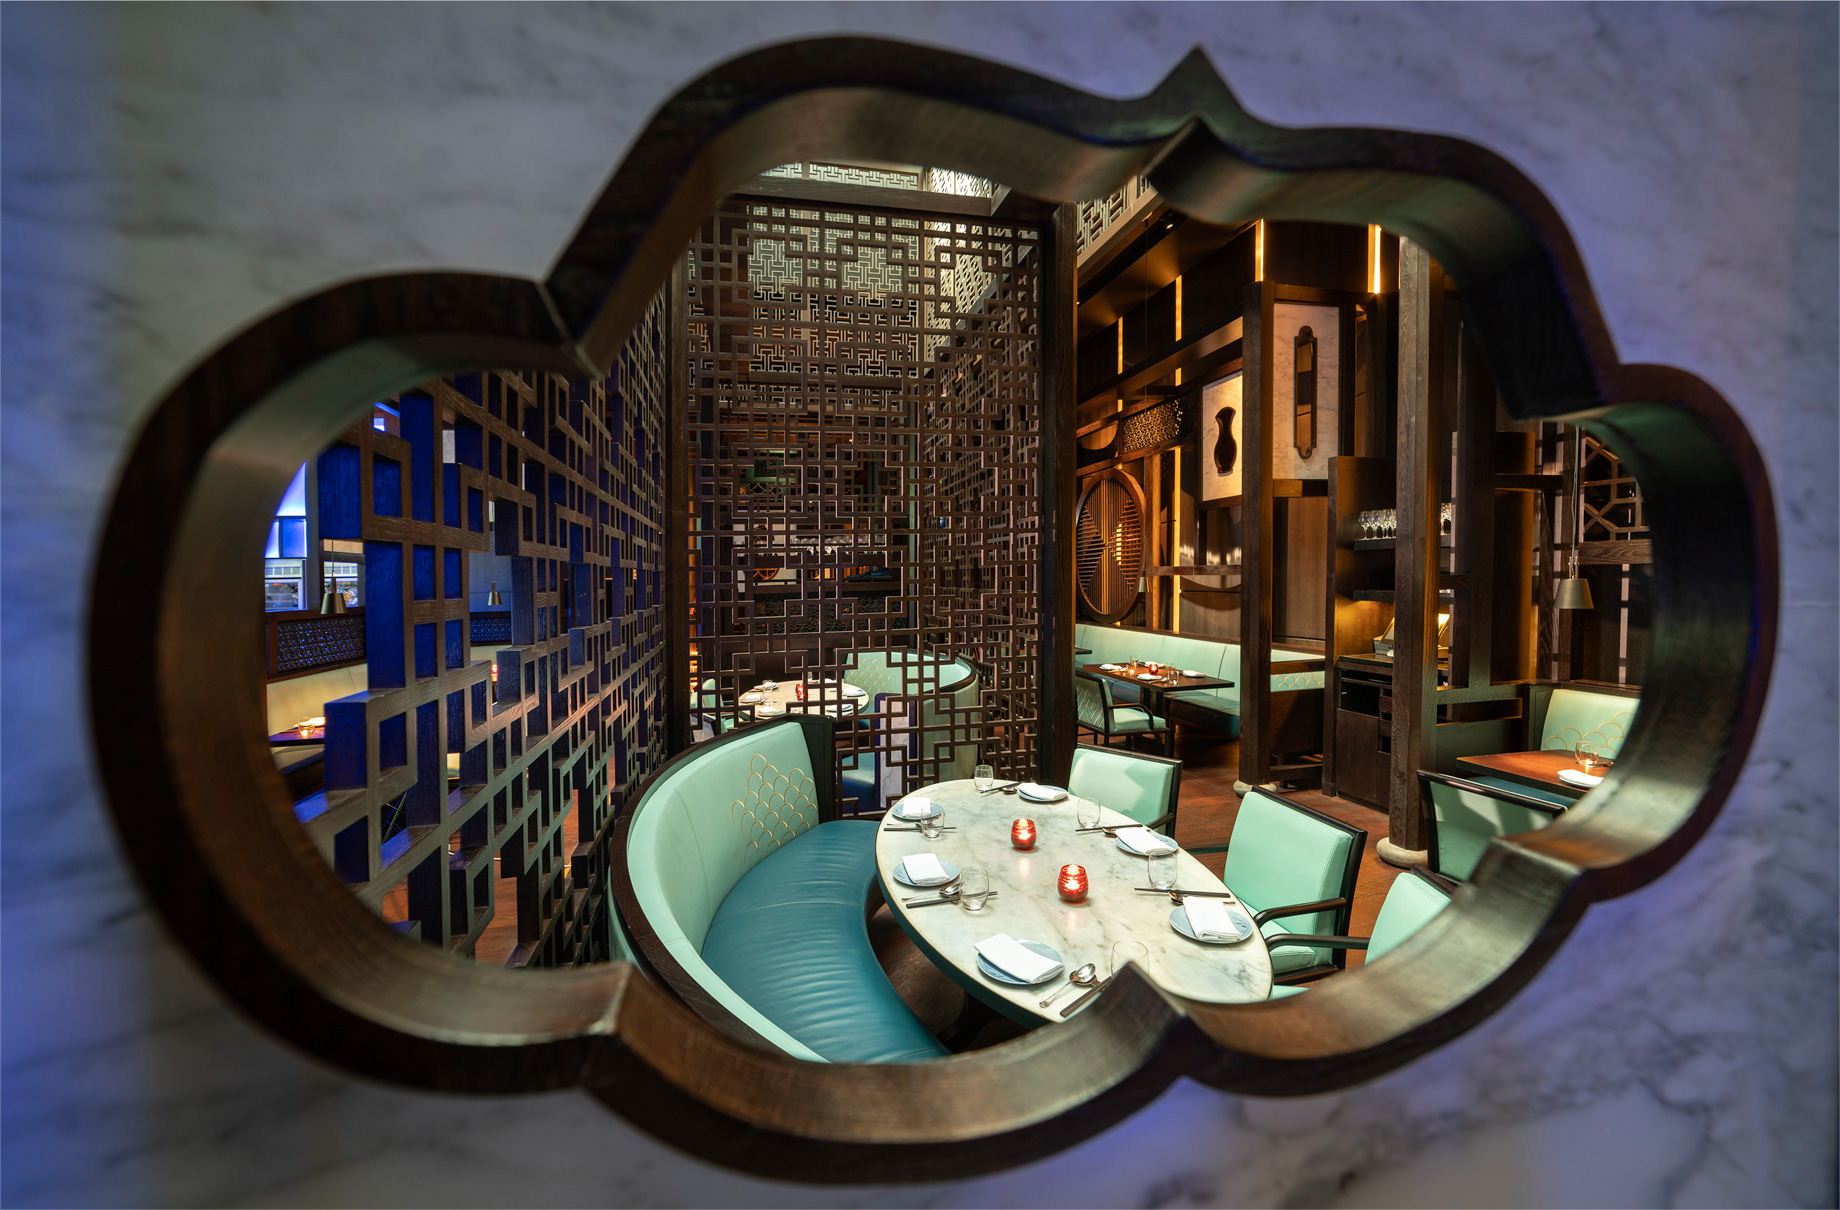 Atlantis The Palm Resort – Crescent Rd, Dubai, UAE – Hakkasan Restaurant